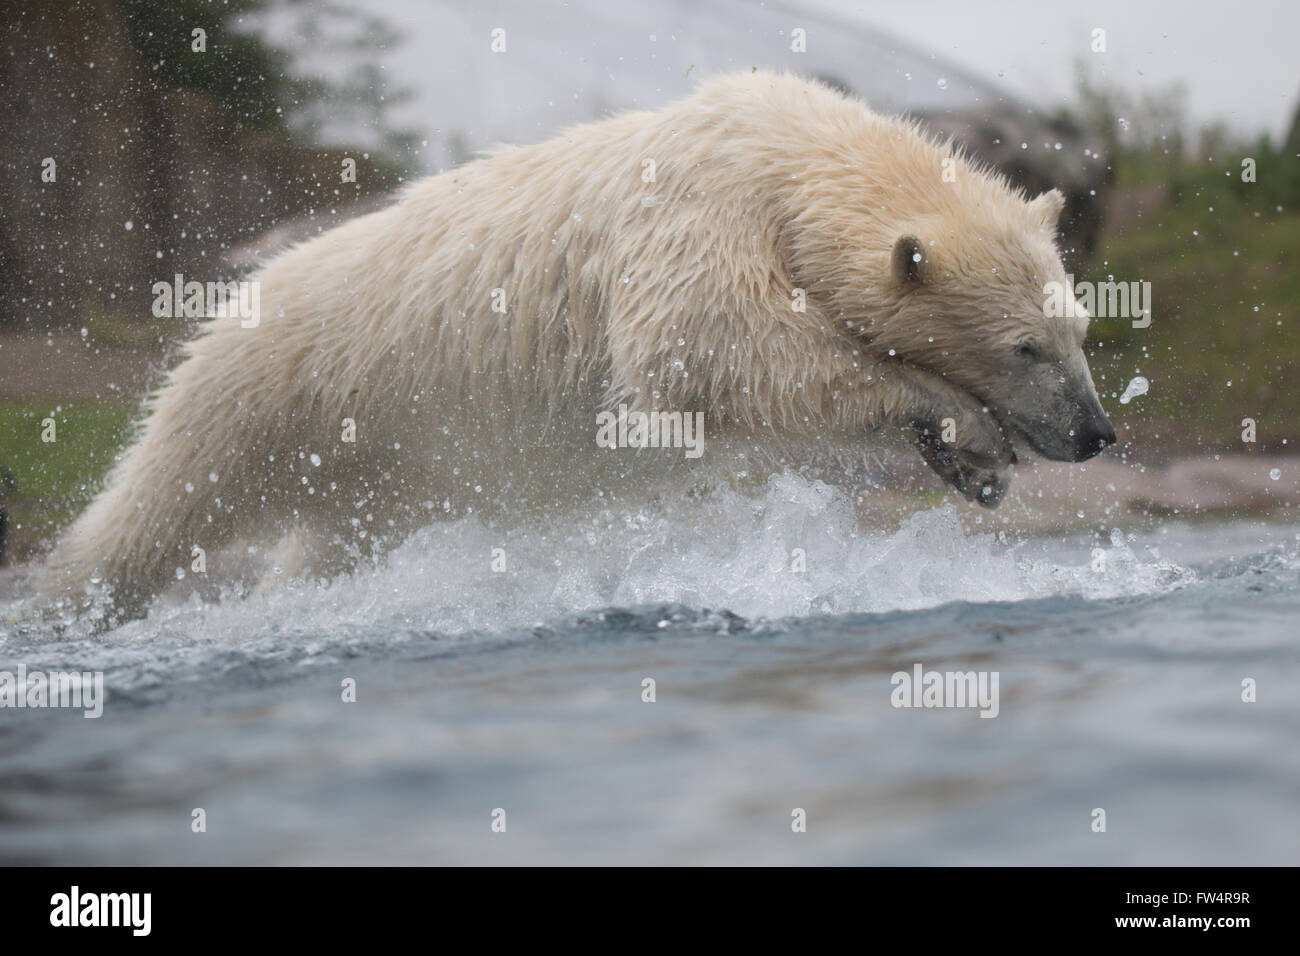 Polar bear diving into water Stock Photo